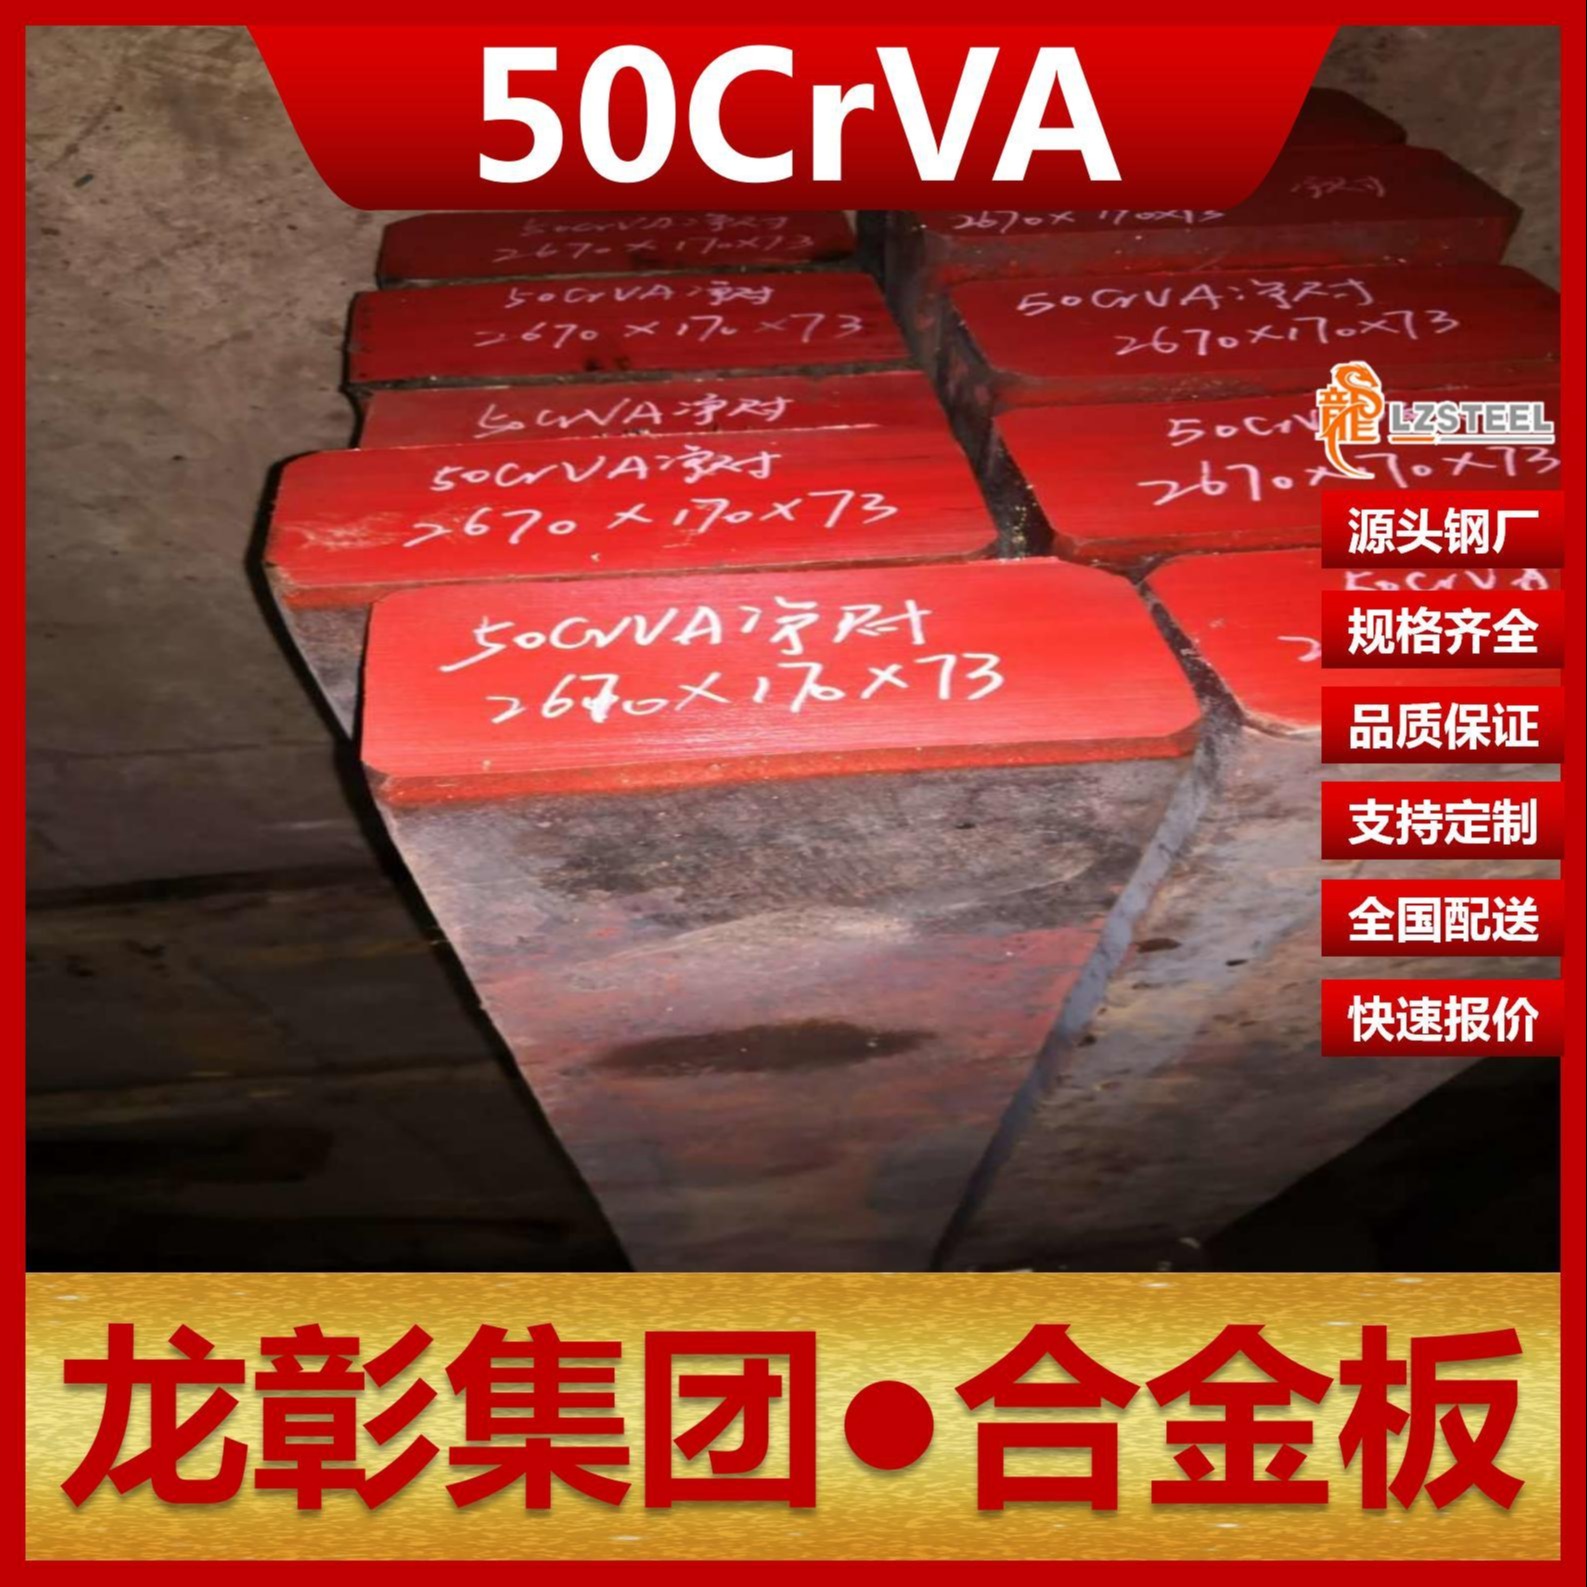 50CrVA钢板现货批零 龙彰集团主营50CrVA合金板卷材可切割